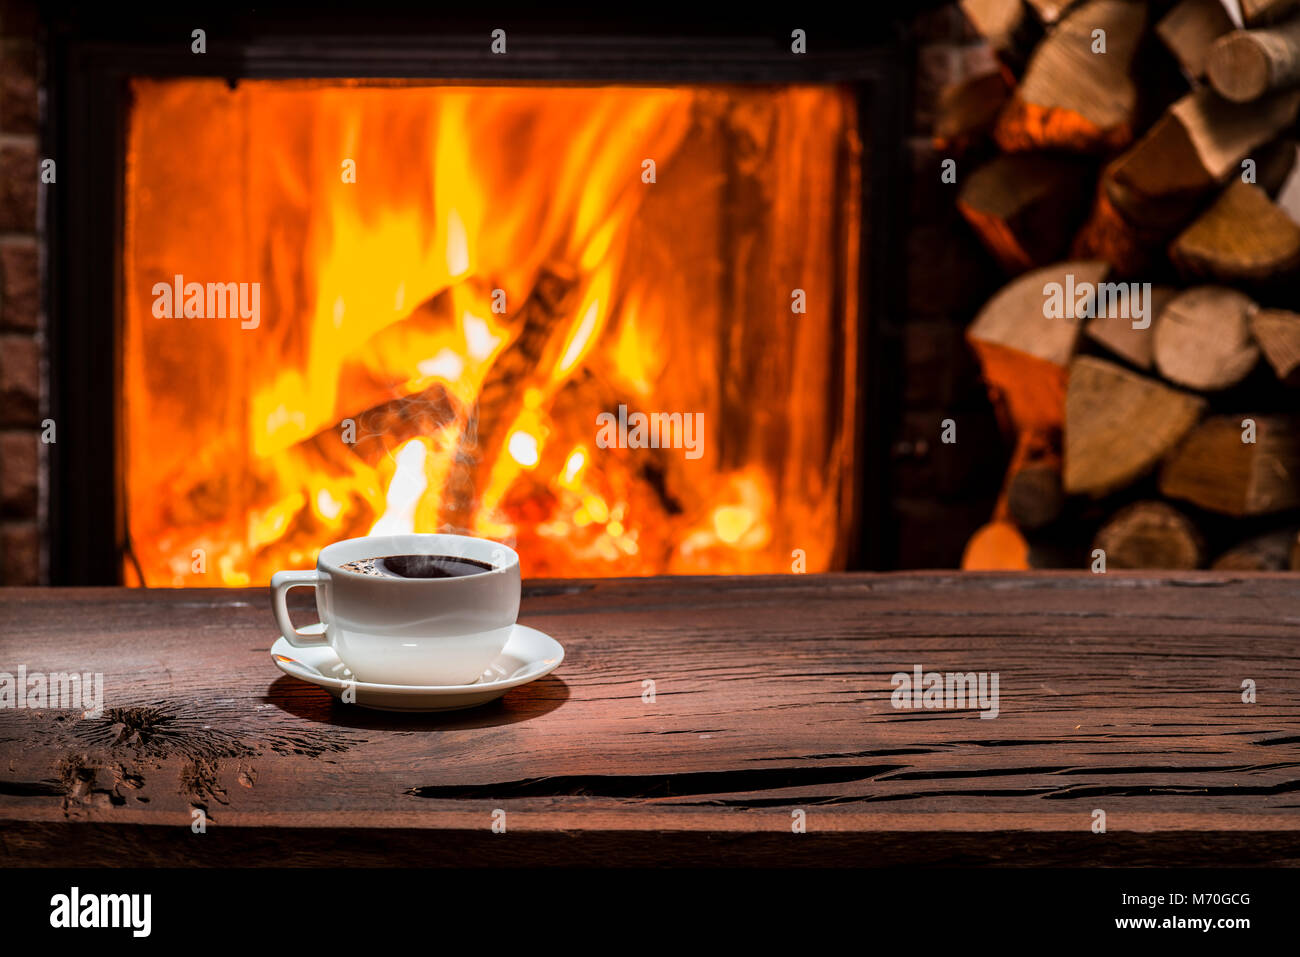 La tasse de café noir sur la table en bois Photo Stock - Alamy